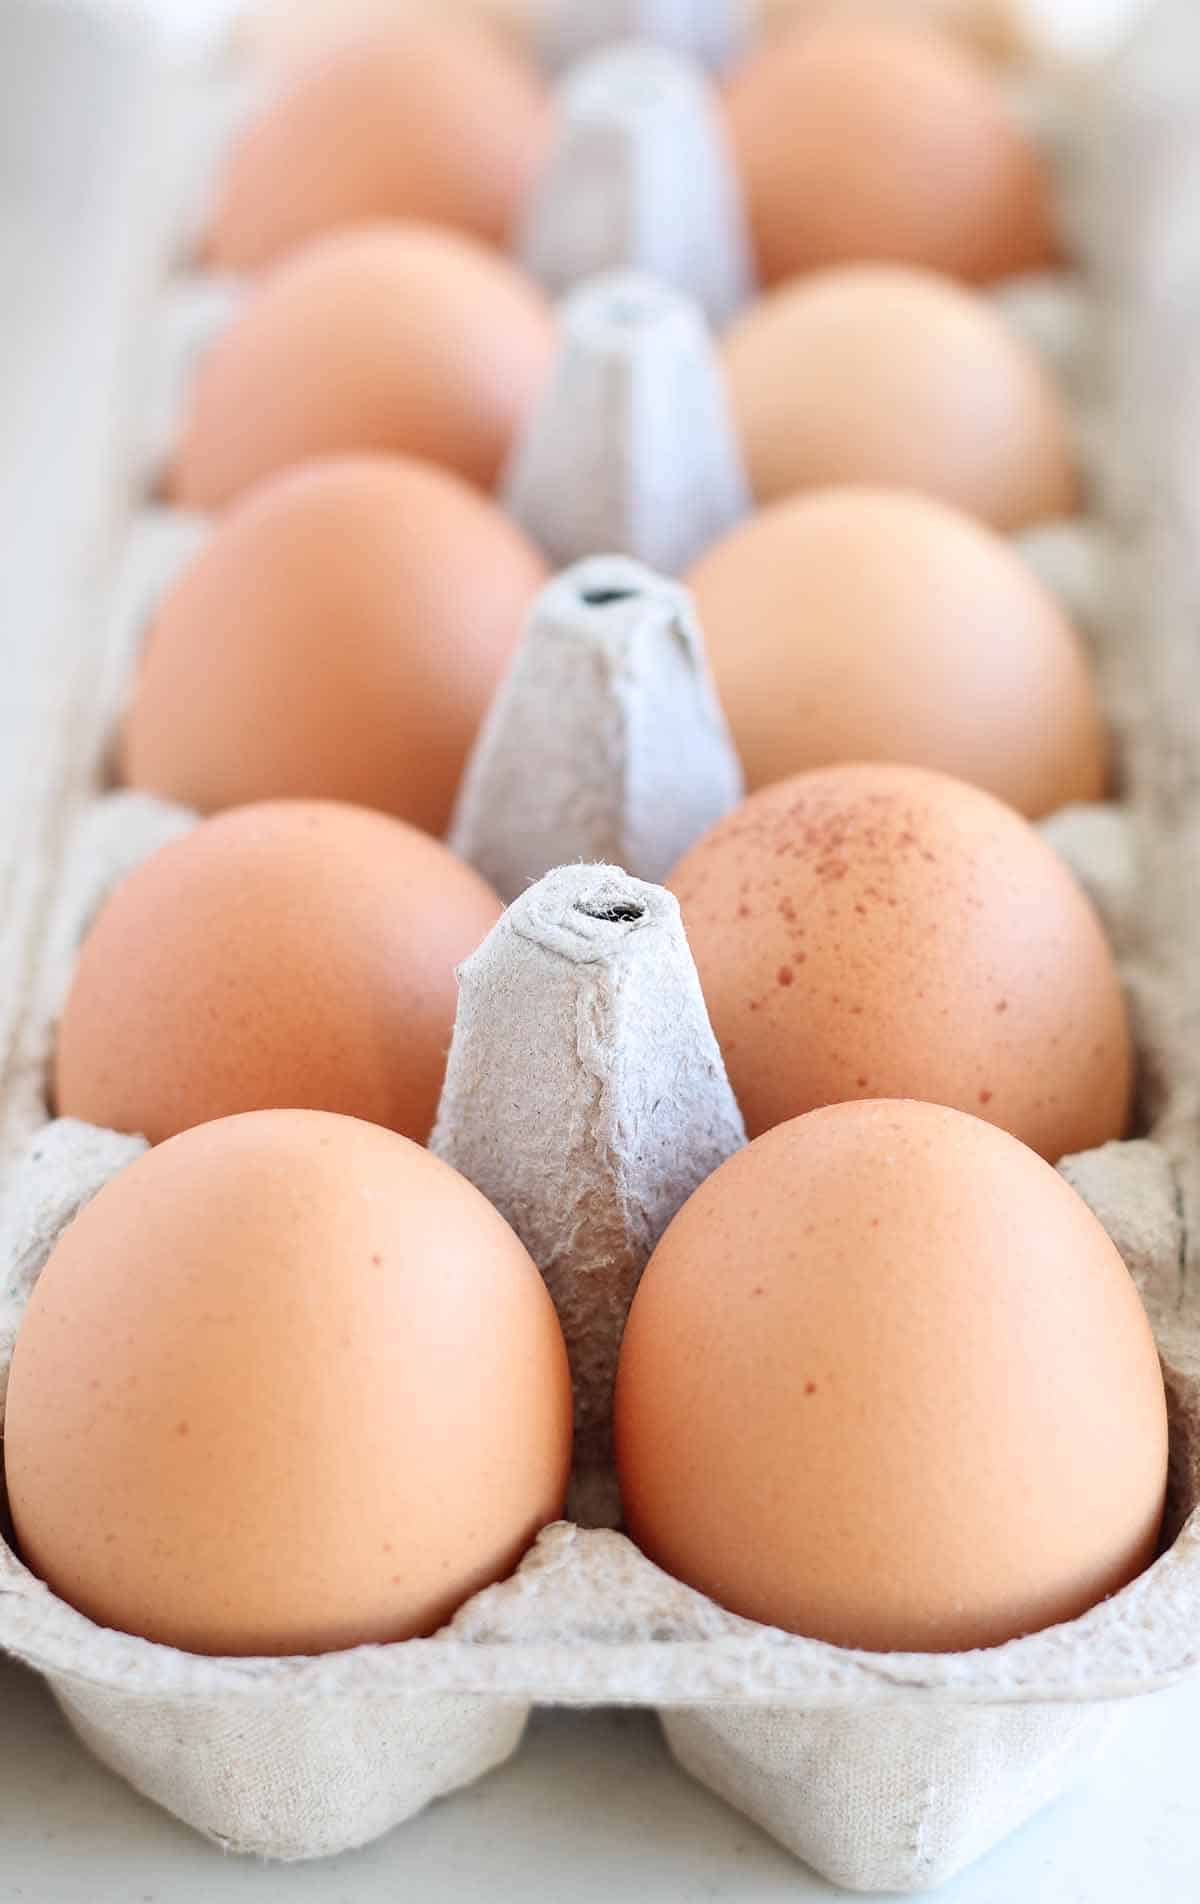 carton of fresh eggs